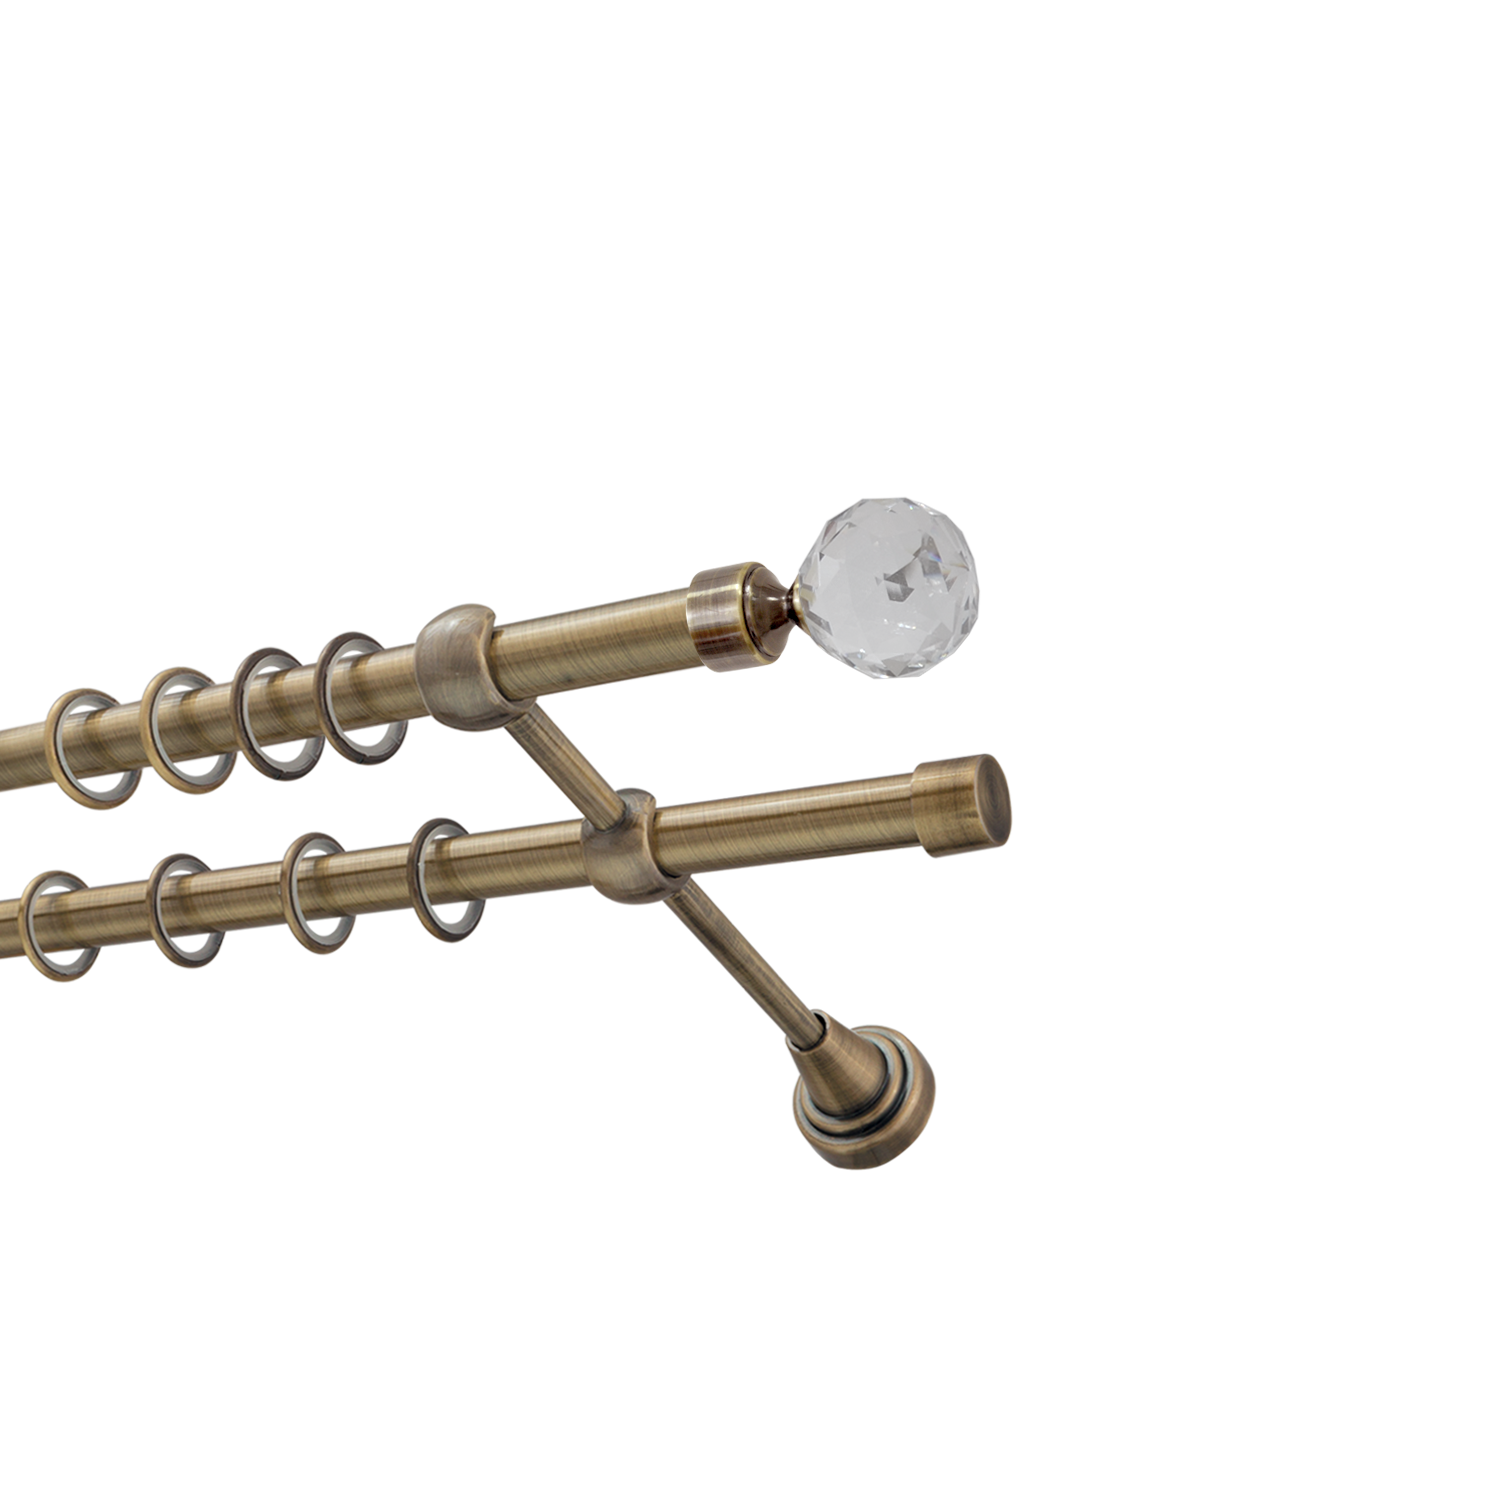 Металлический карниз для штор Карат, двухрядный 16/16 мм, бронза, гладкая штанга, длина 140 см - фото Wikidecor.ru